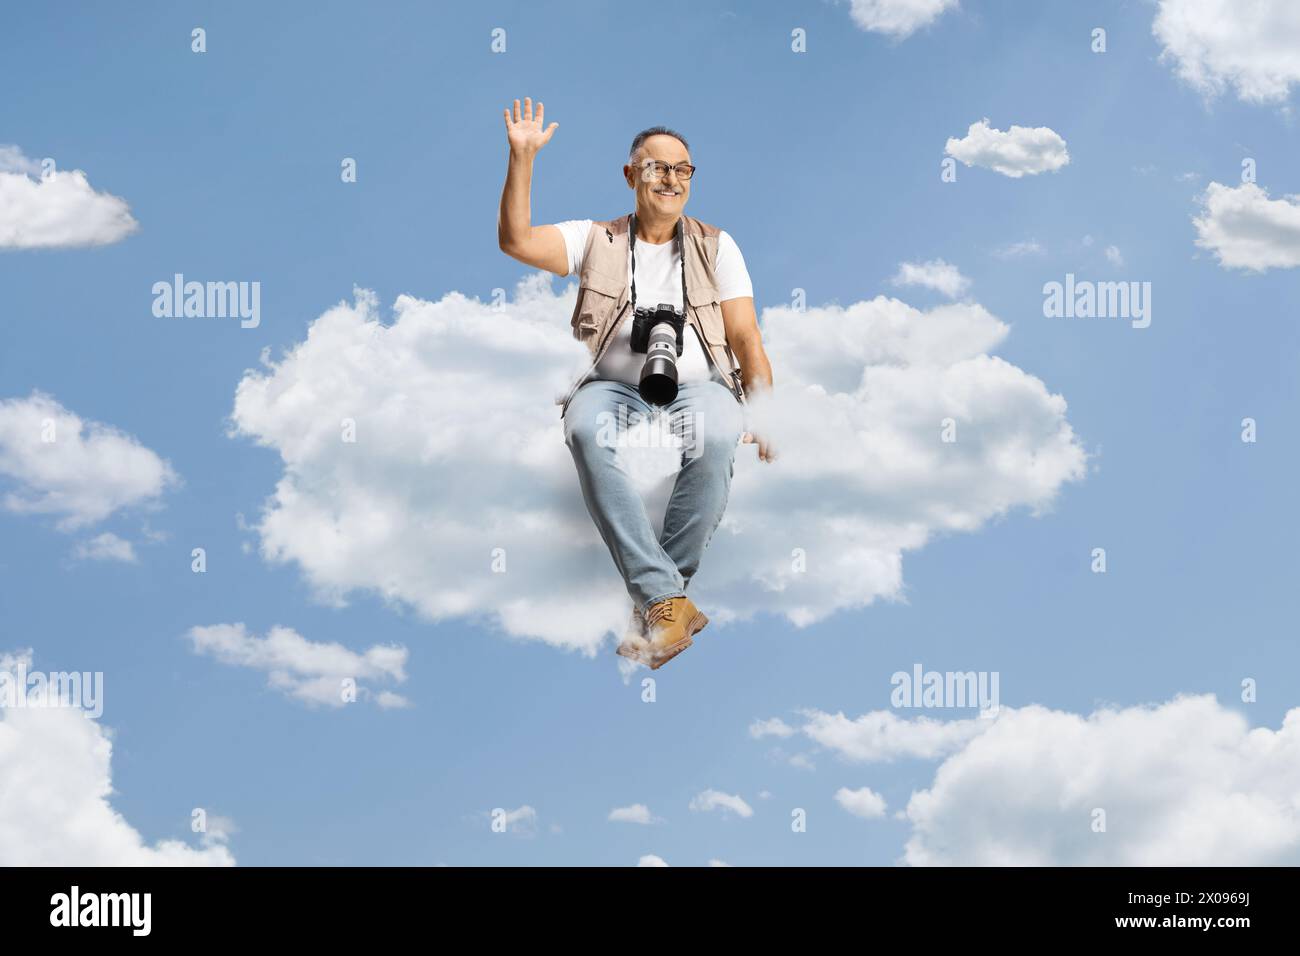 Fotograf mit einer Kamera, die auf einer Wolke sitzt und winkt Stockfoto